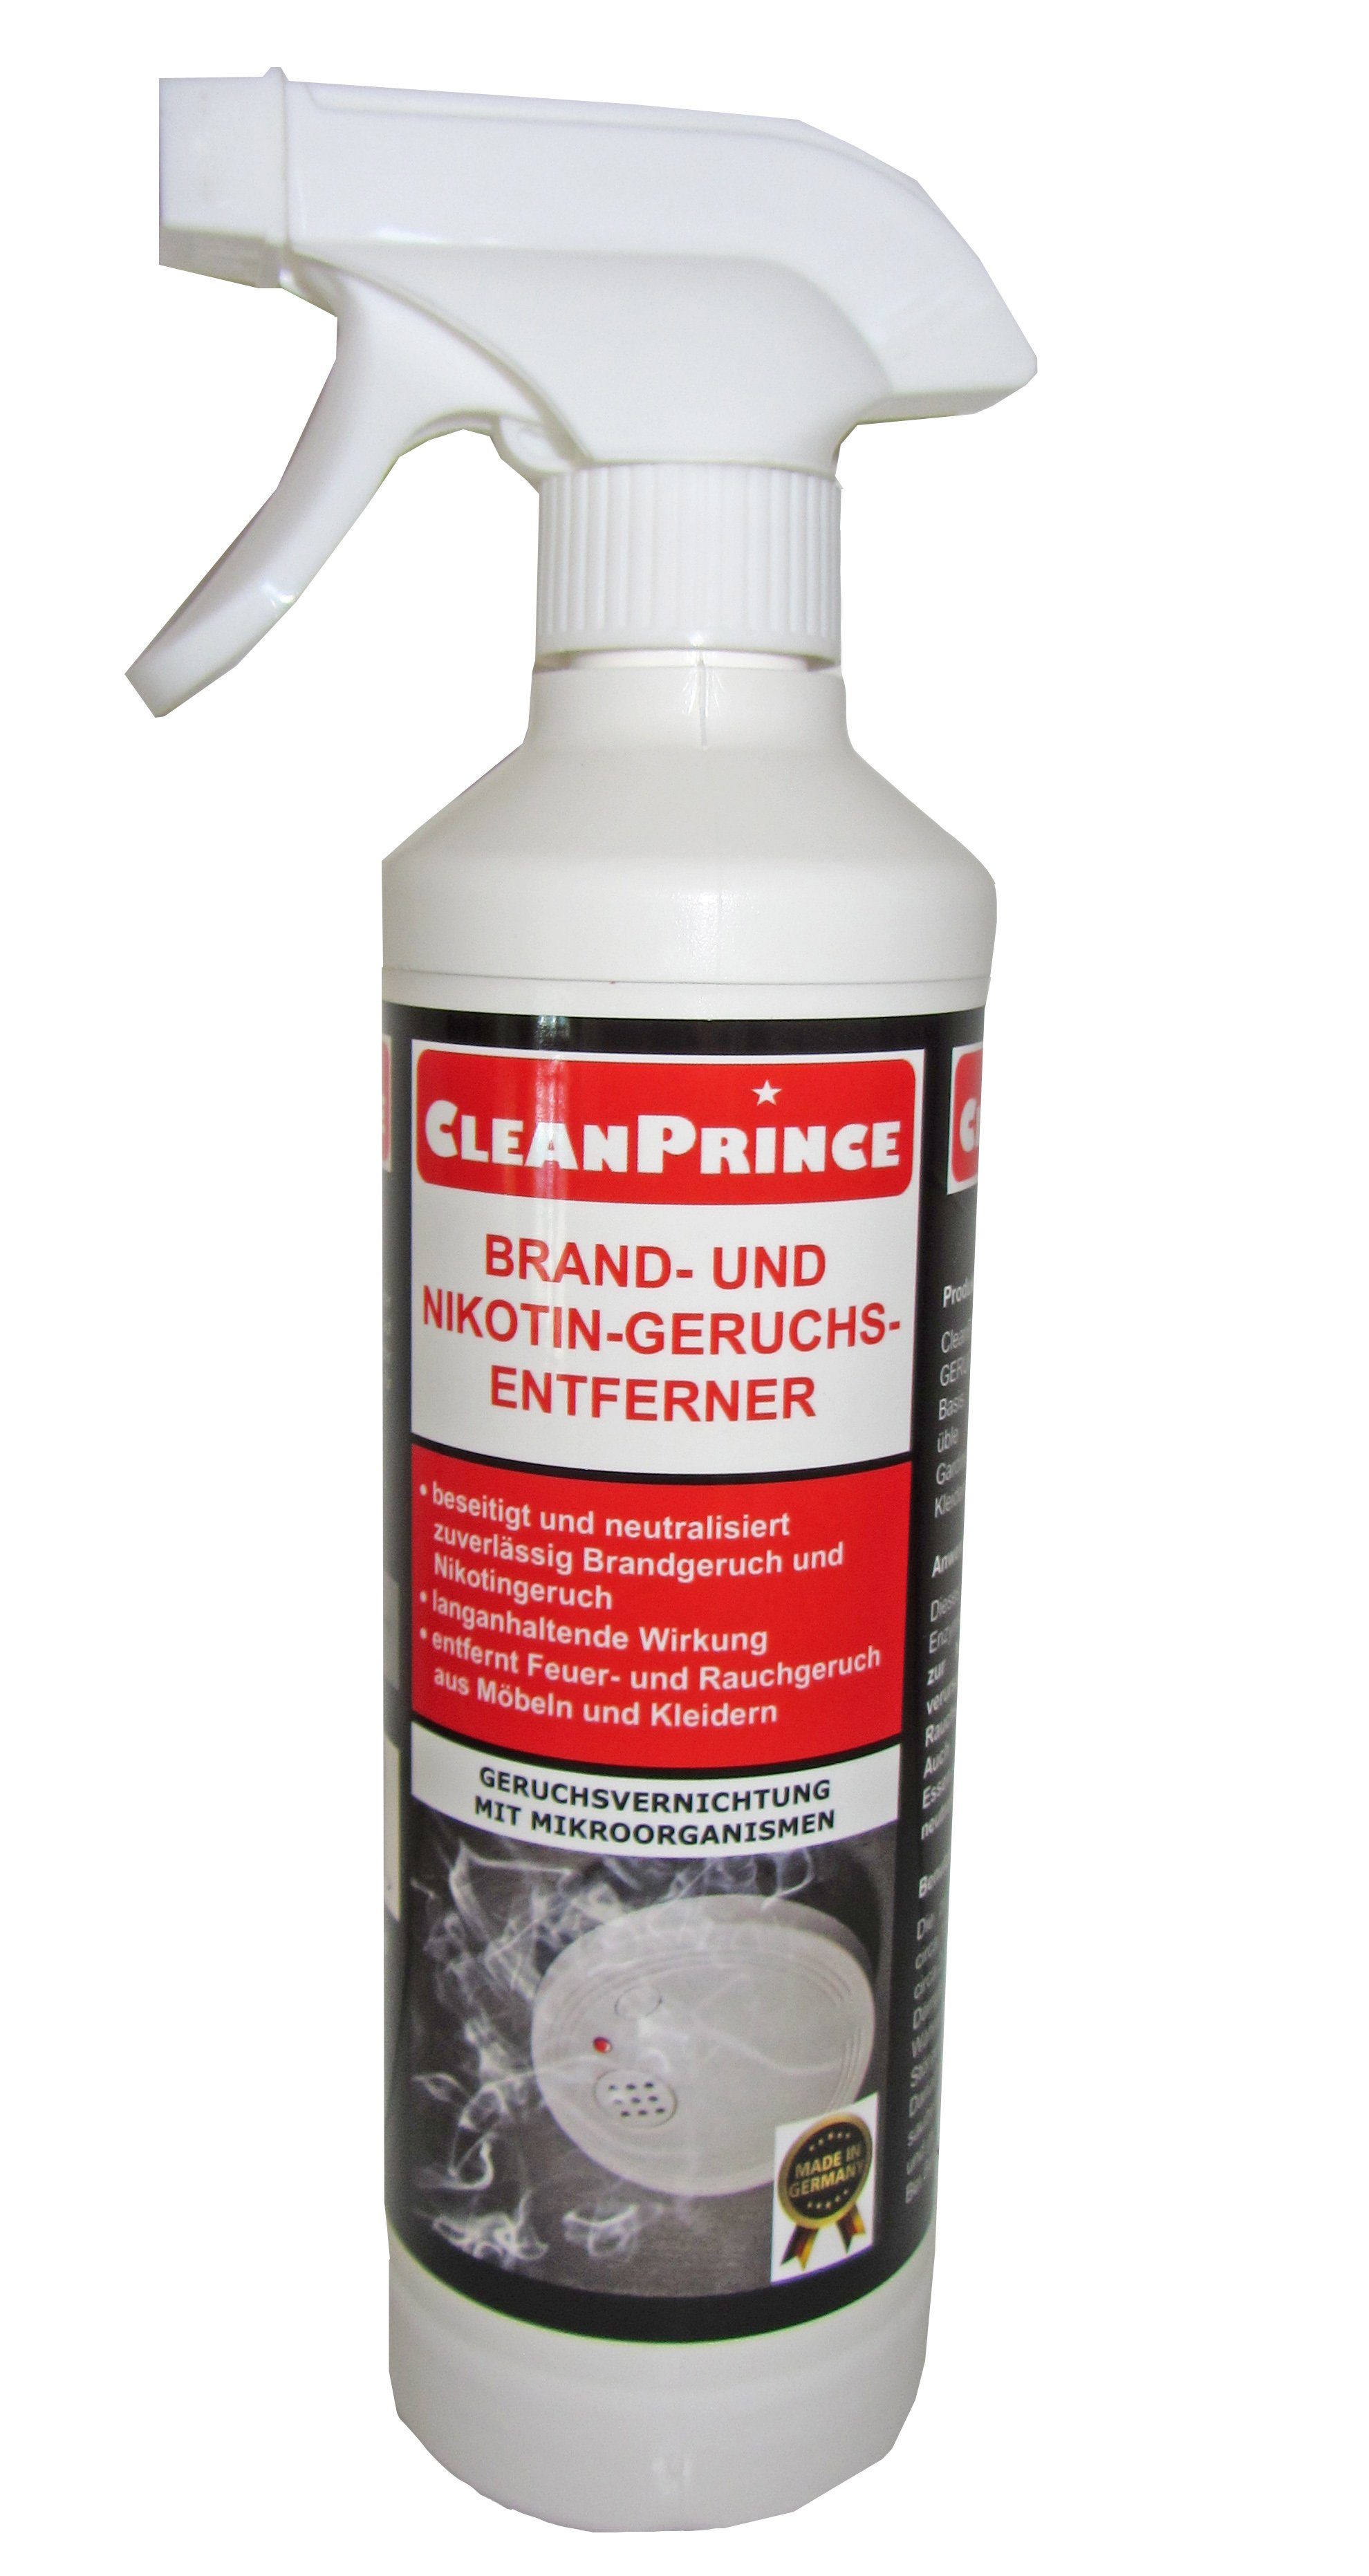 CleanPrince Geruchsentferner Brand- und Nikotingeruch-Entferner